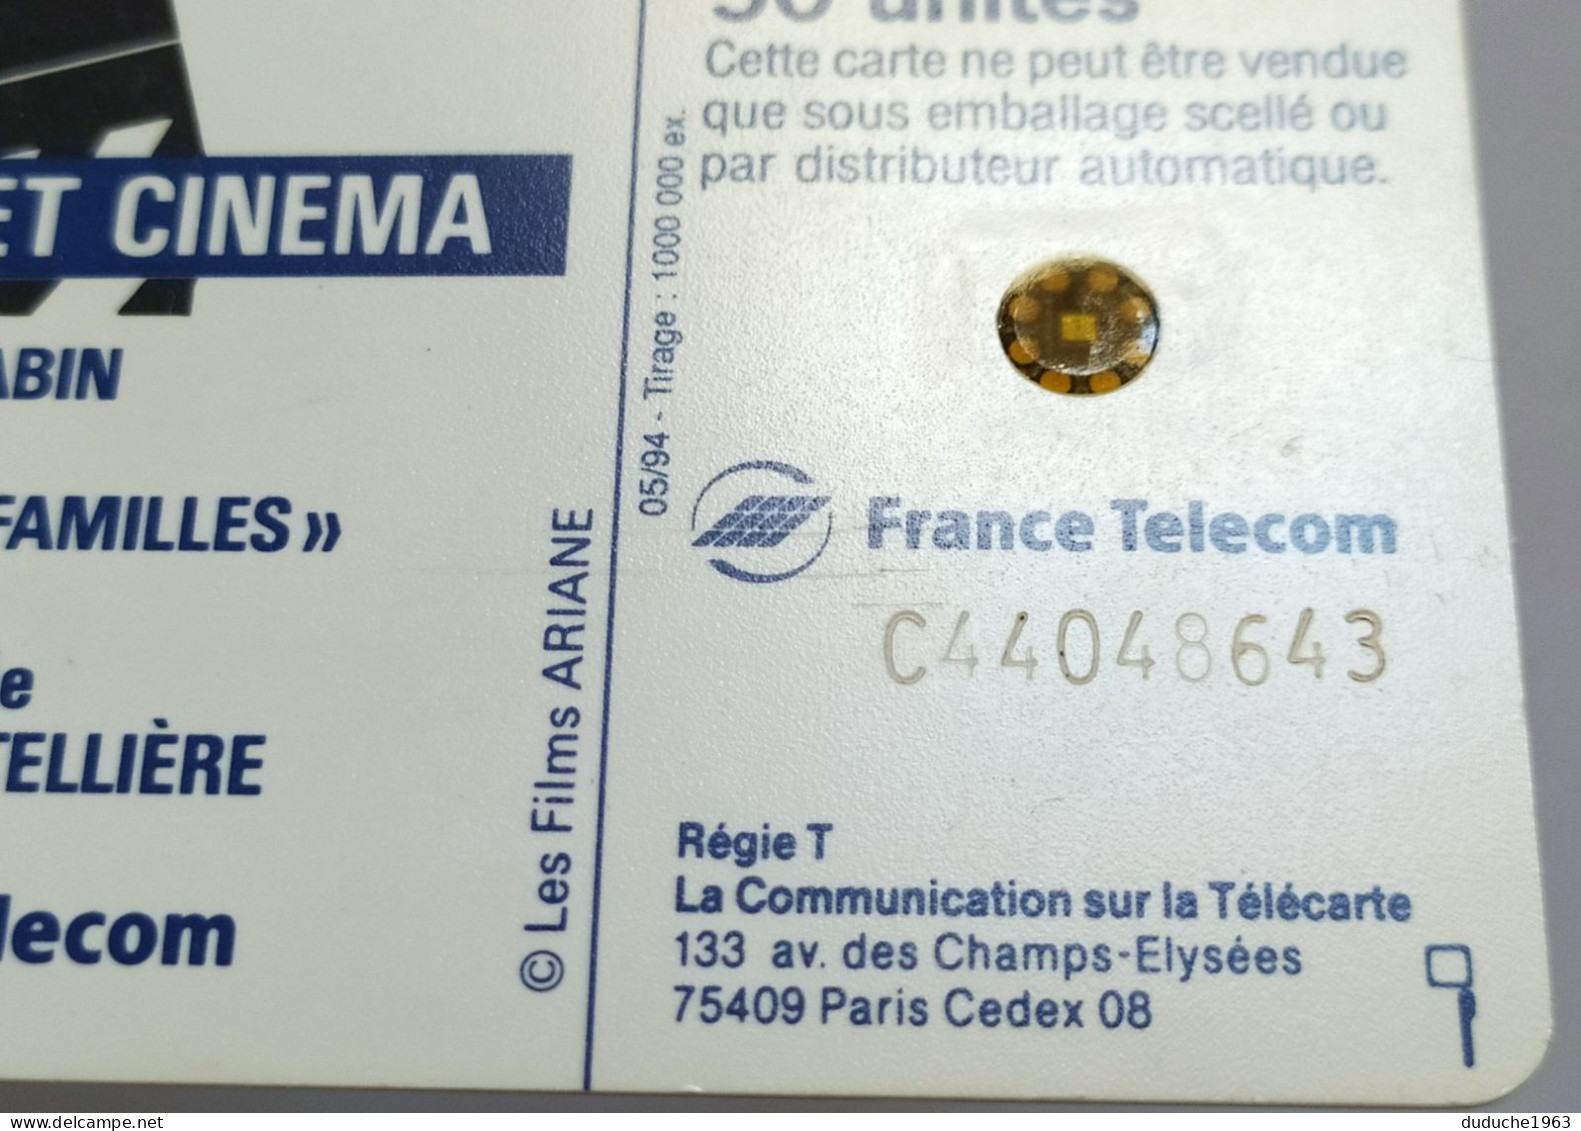 Télécarte France - Téléphone Et Cinéma - Jean Gabin - Zonder Classificatie